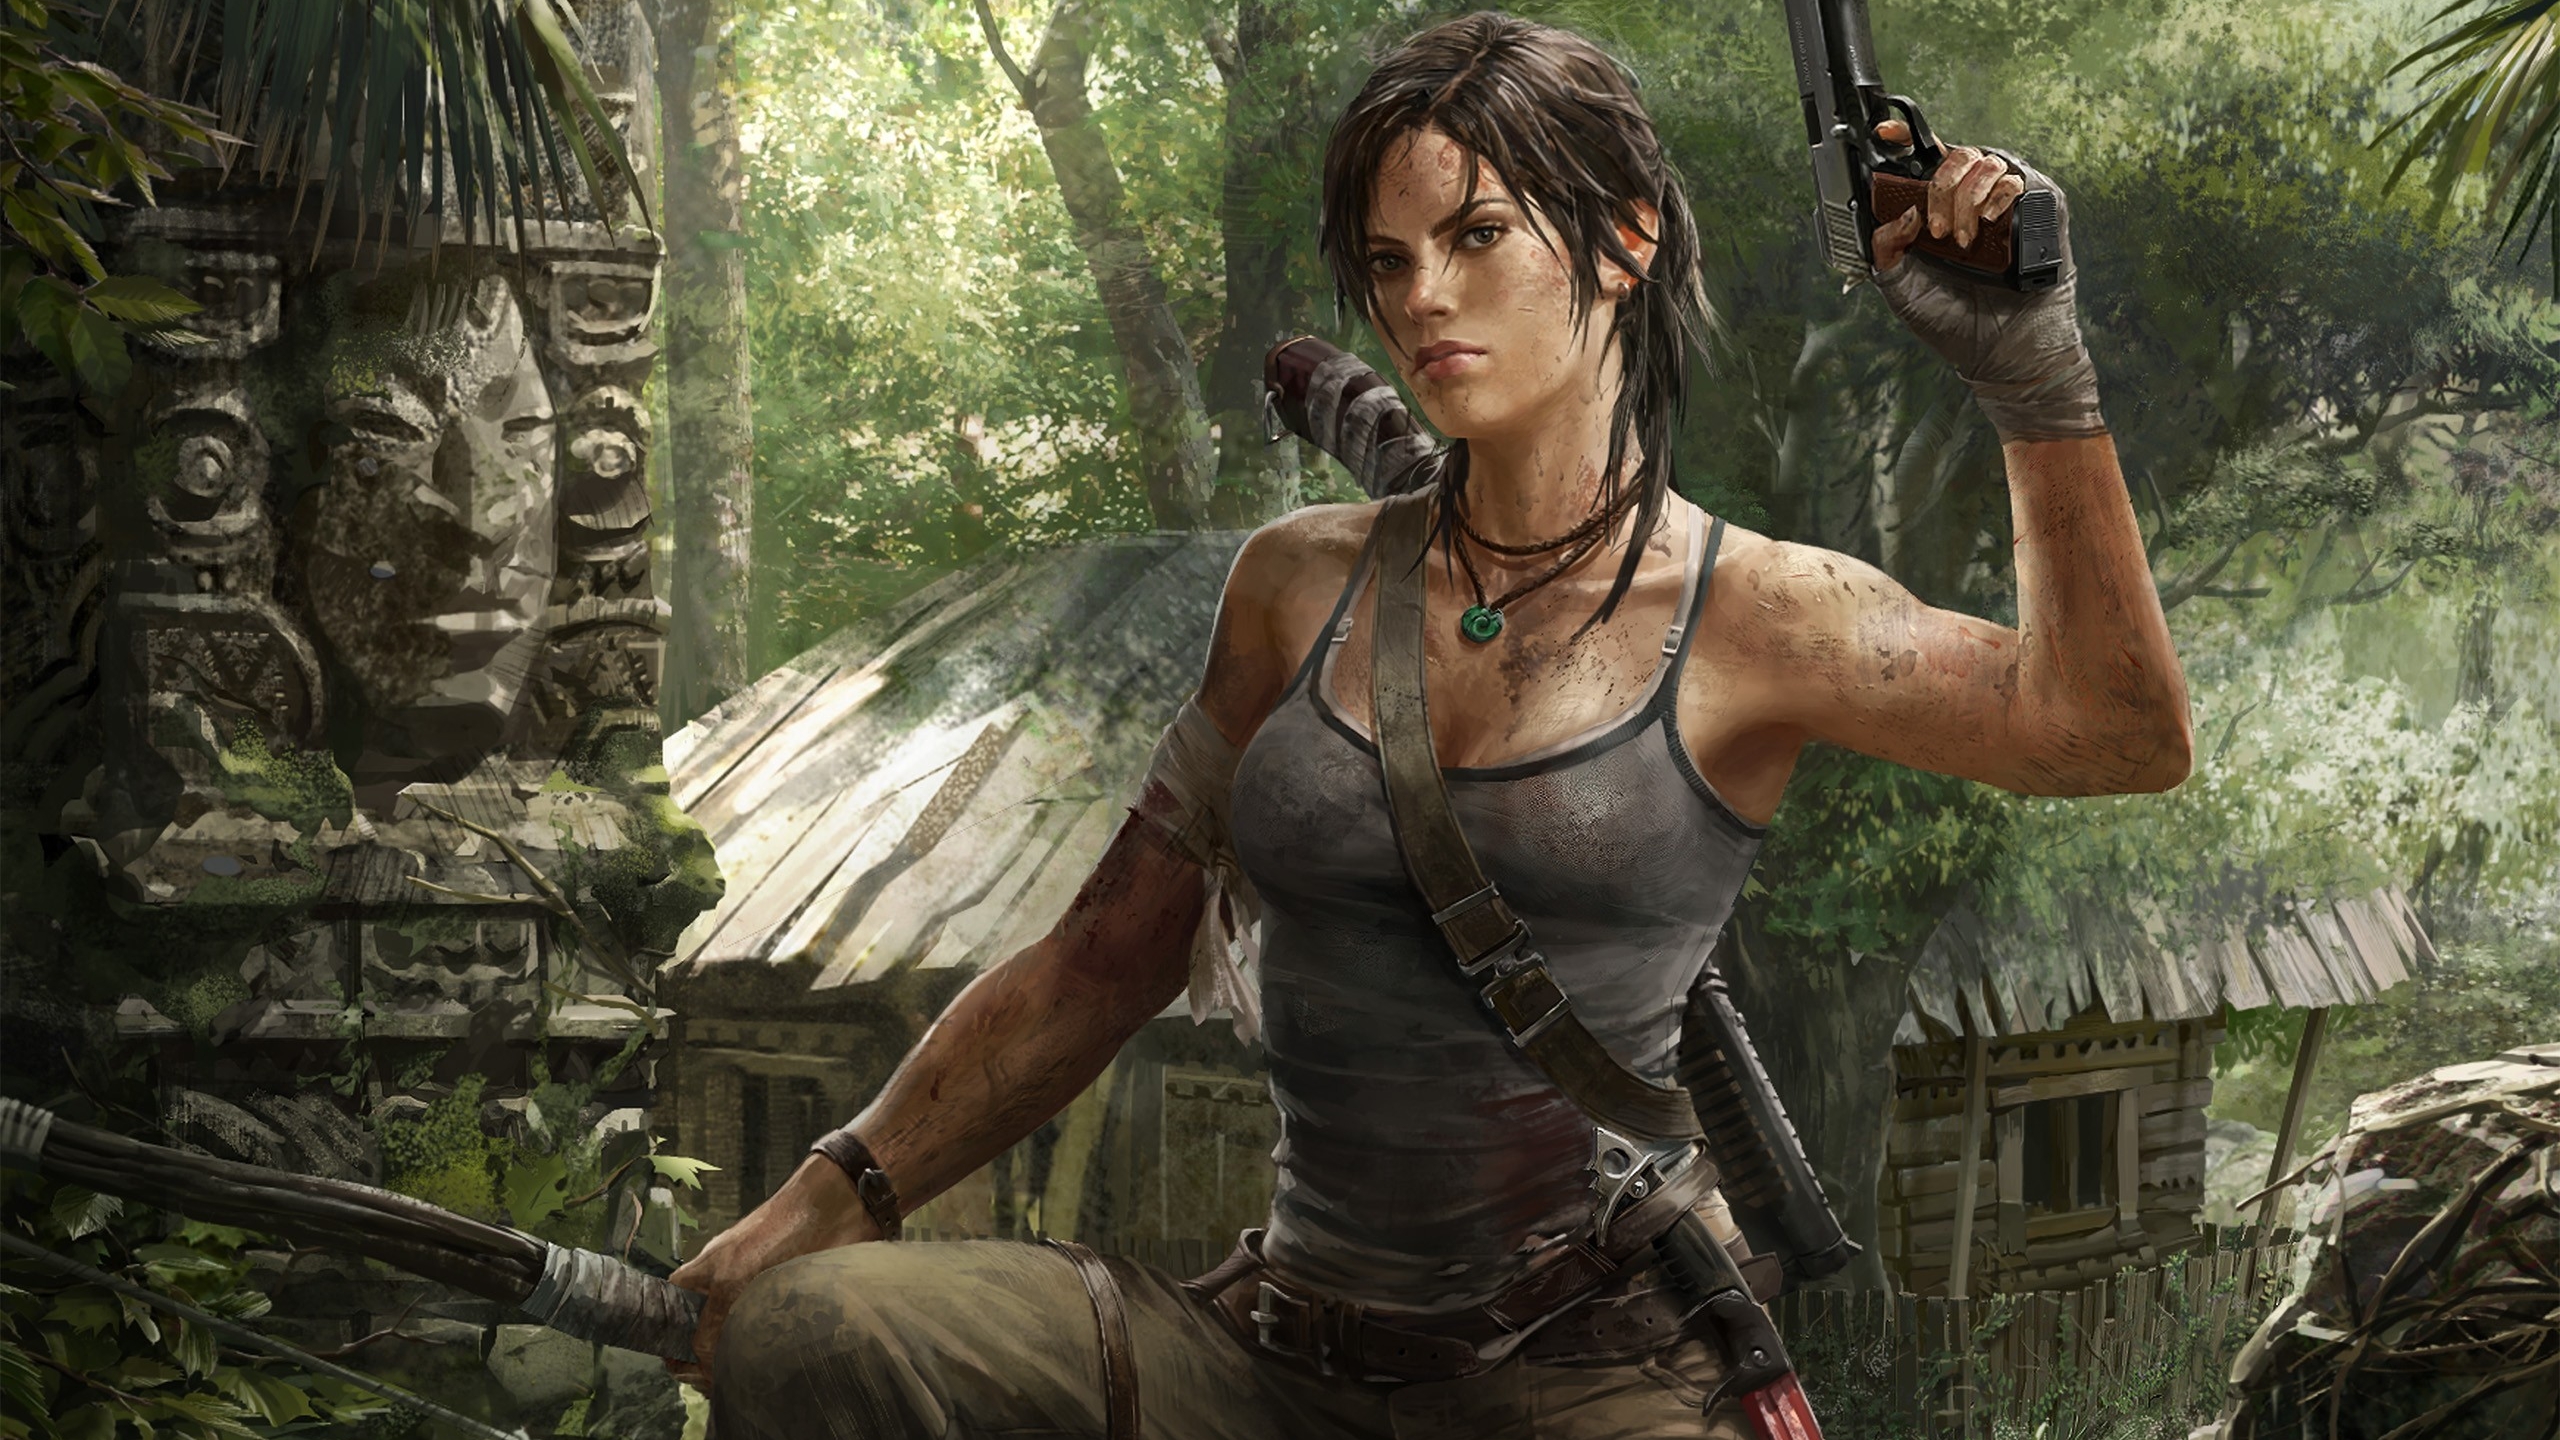 Descarga gratis la imagen Tomb Raider, Videojuego en el escritorio de tu PC